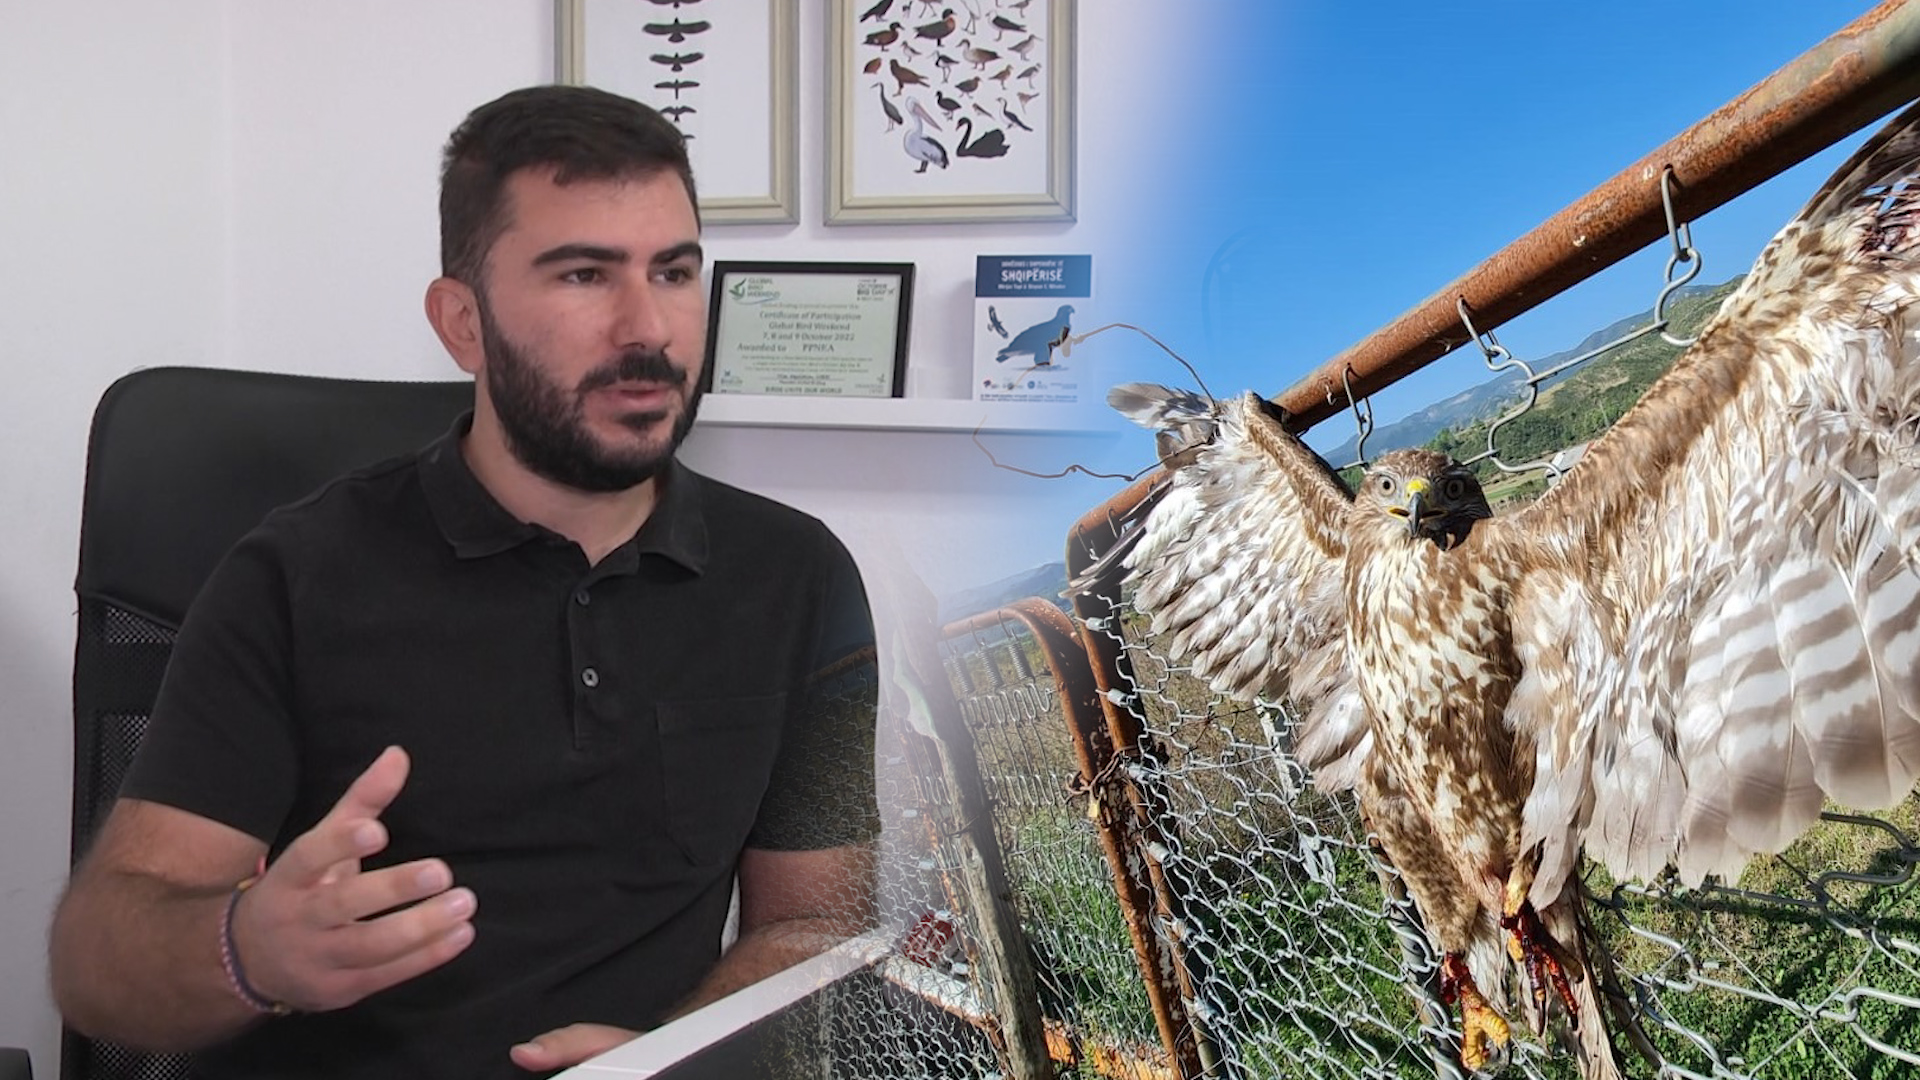 Shqiponja e dhunuar në Përmet, specie e mbrojtur me ligj nga 2006! Aktivisti: Është hutë fushe, lehtësisht e kapshme nga njeriu